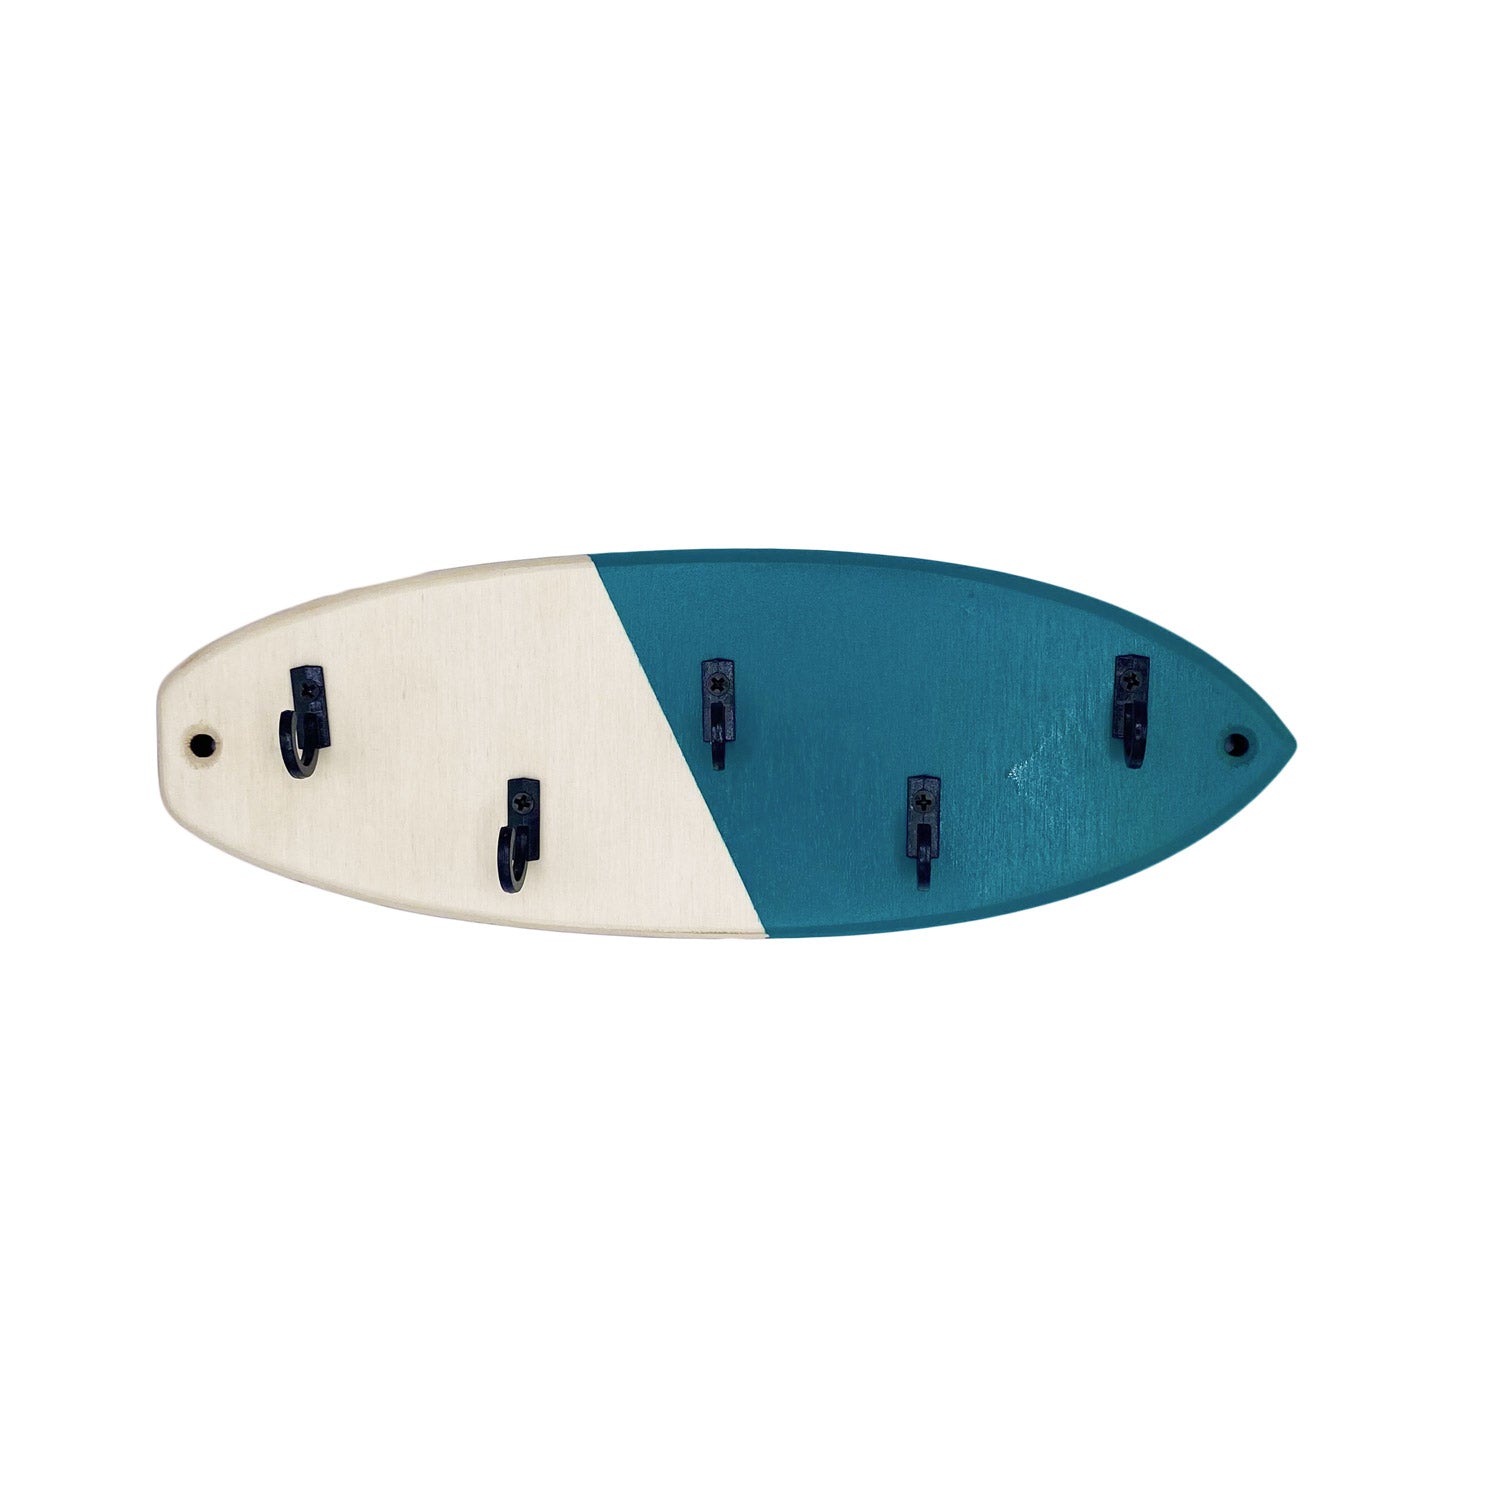 portachiavi da parete a forma di tavola da surf - prodotto sostenibile di algal board